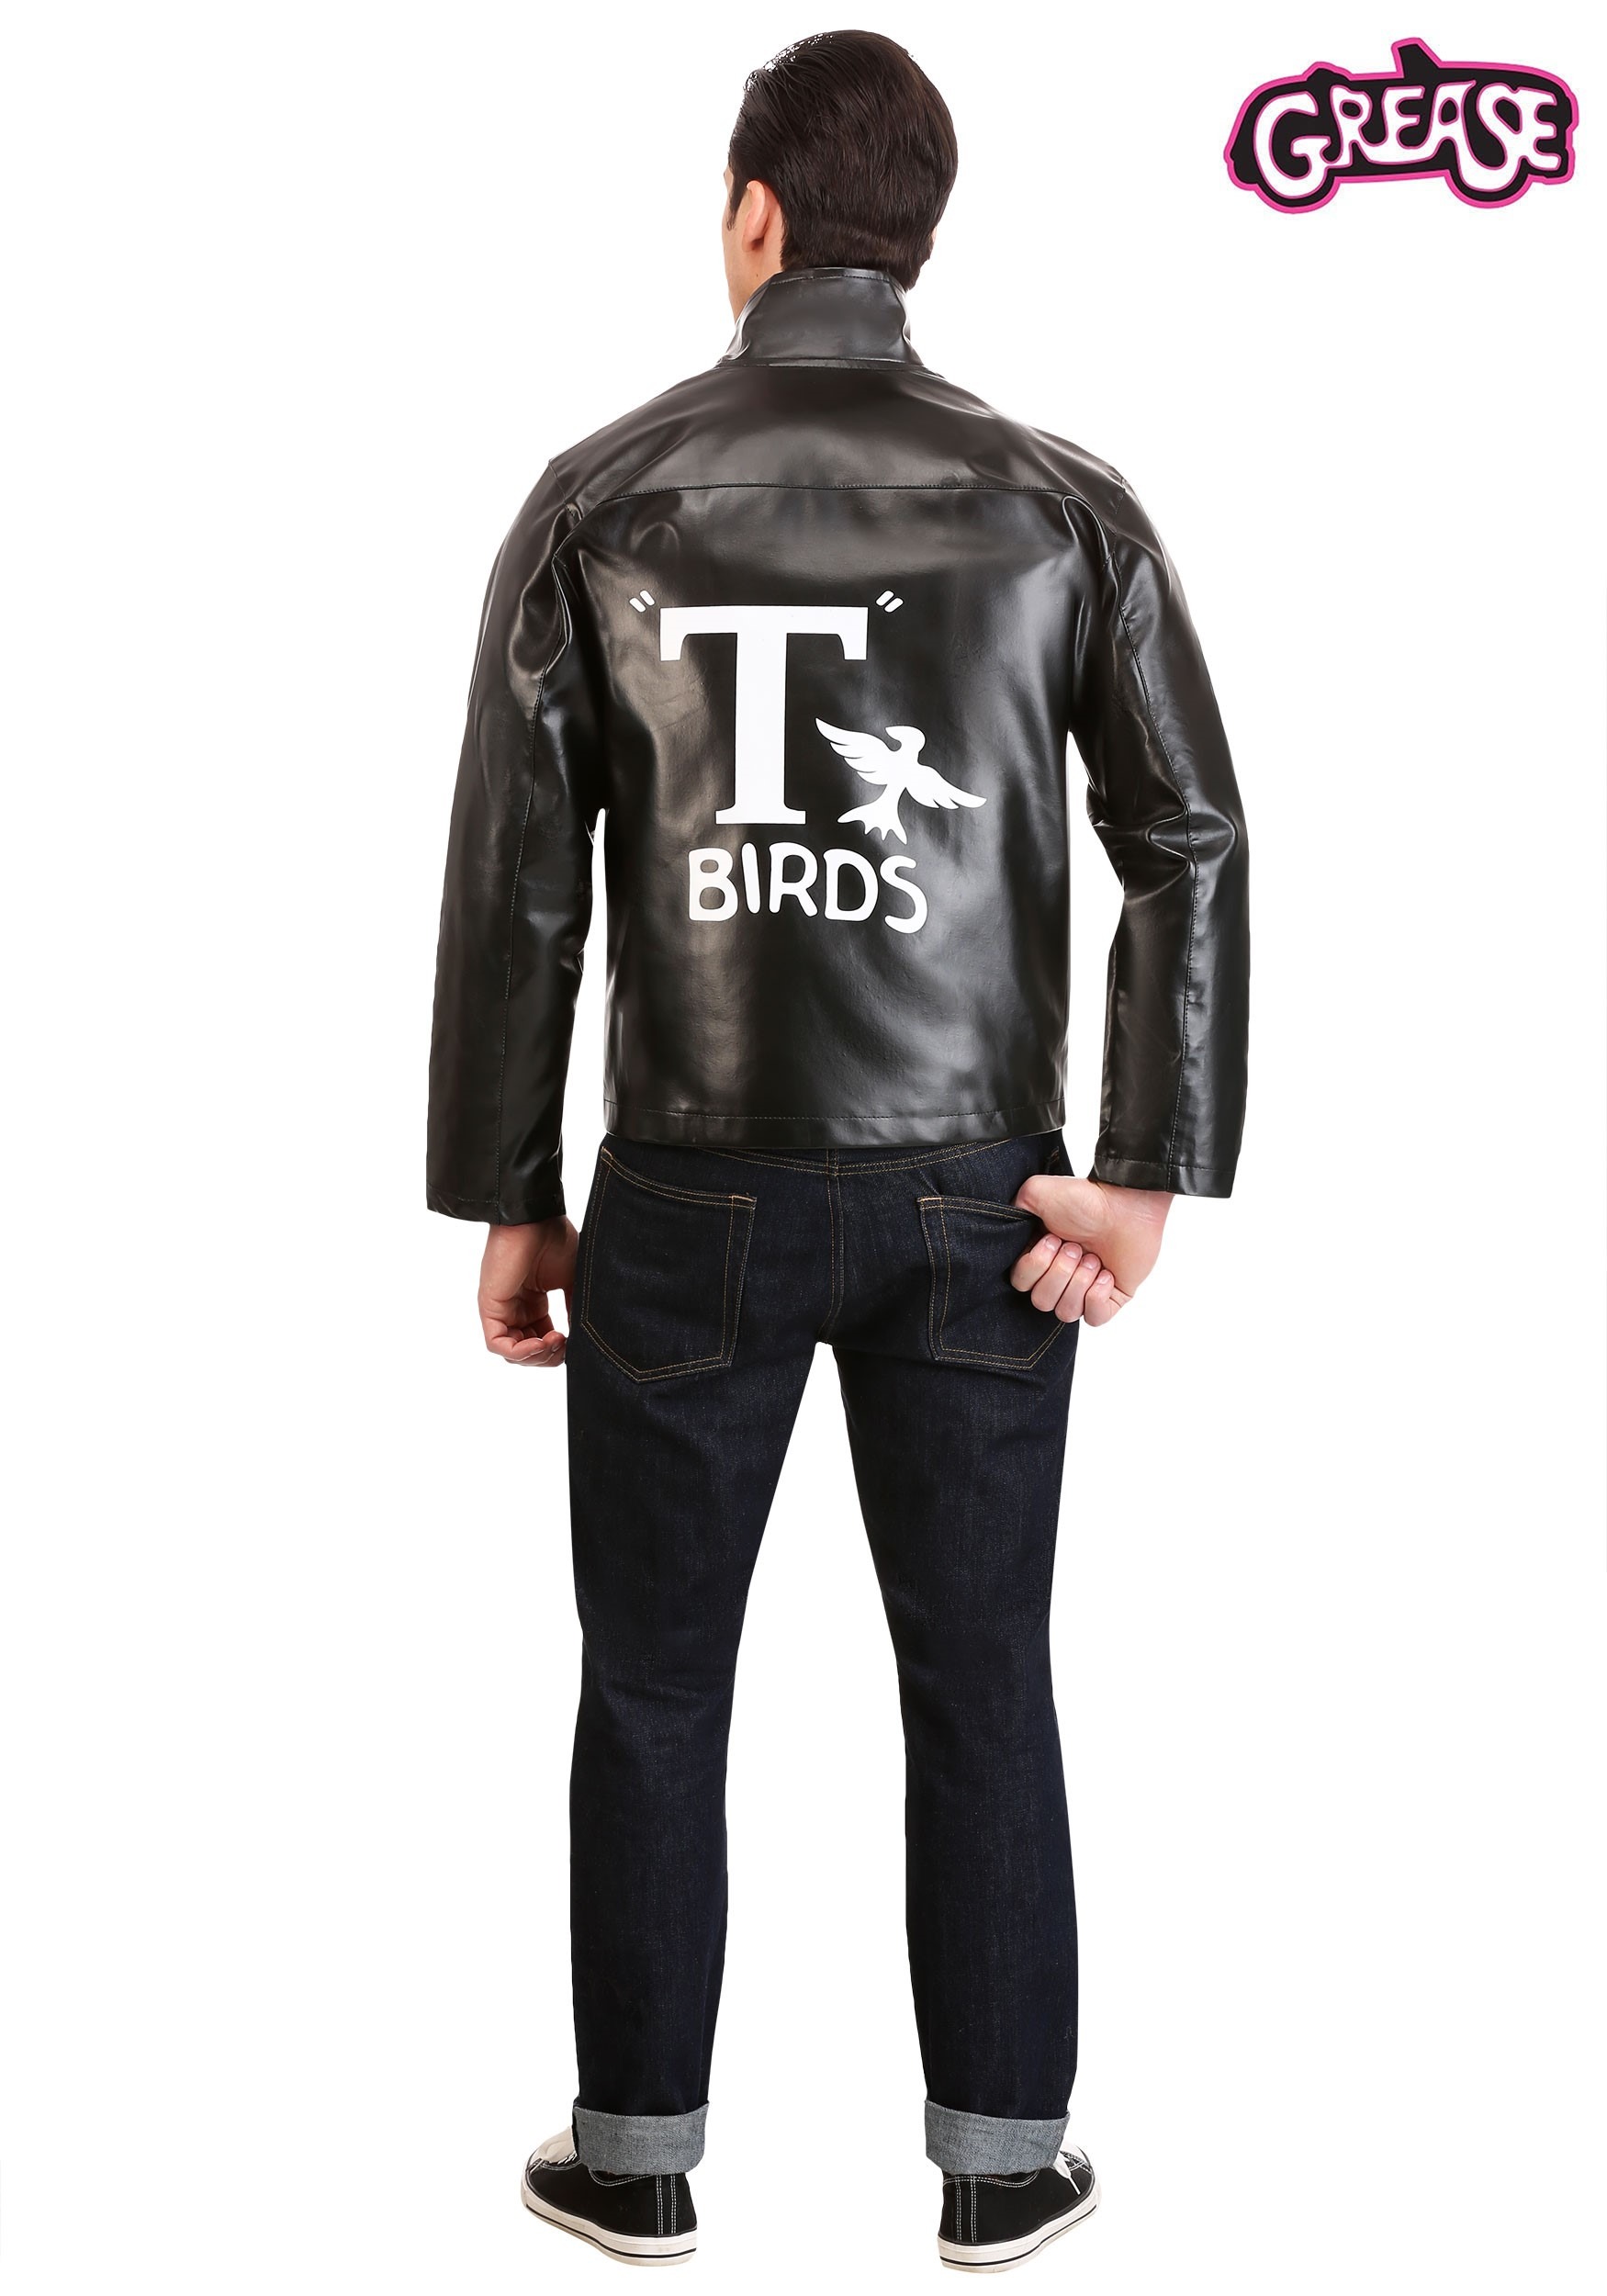 Grease Danny disfraz de Cosplay para hombre, chaqueta de t-birds